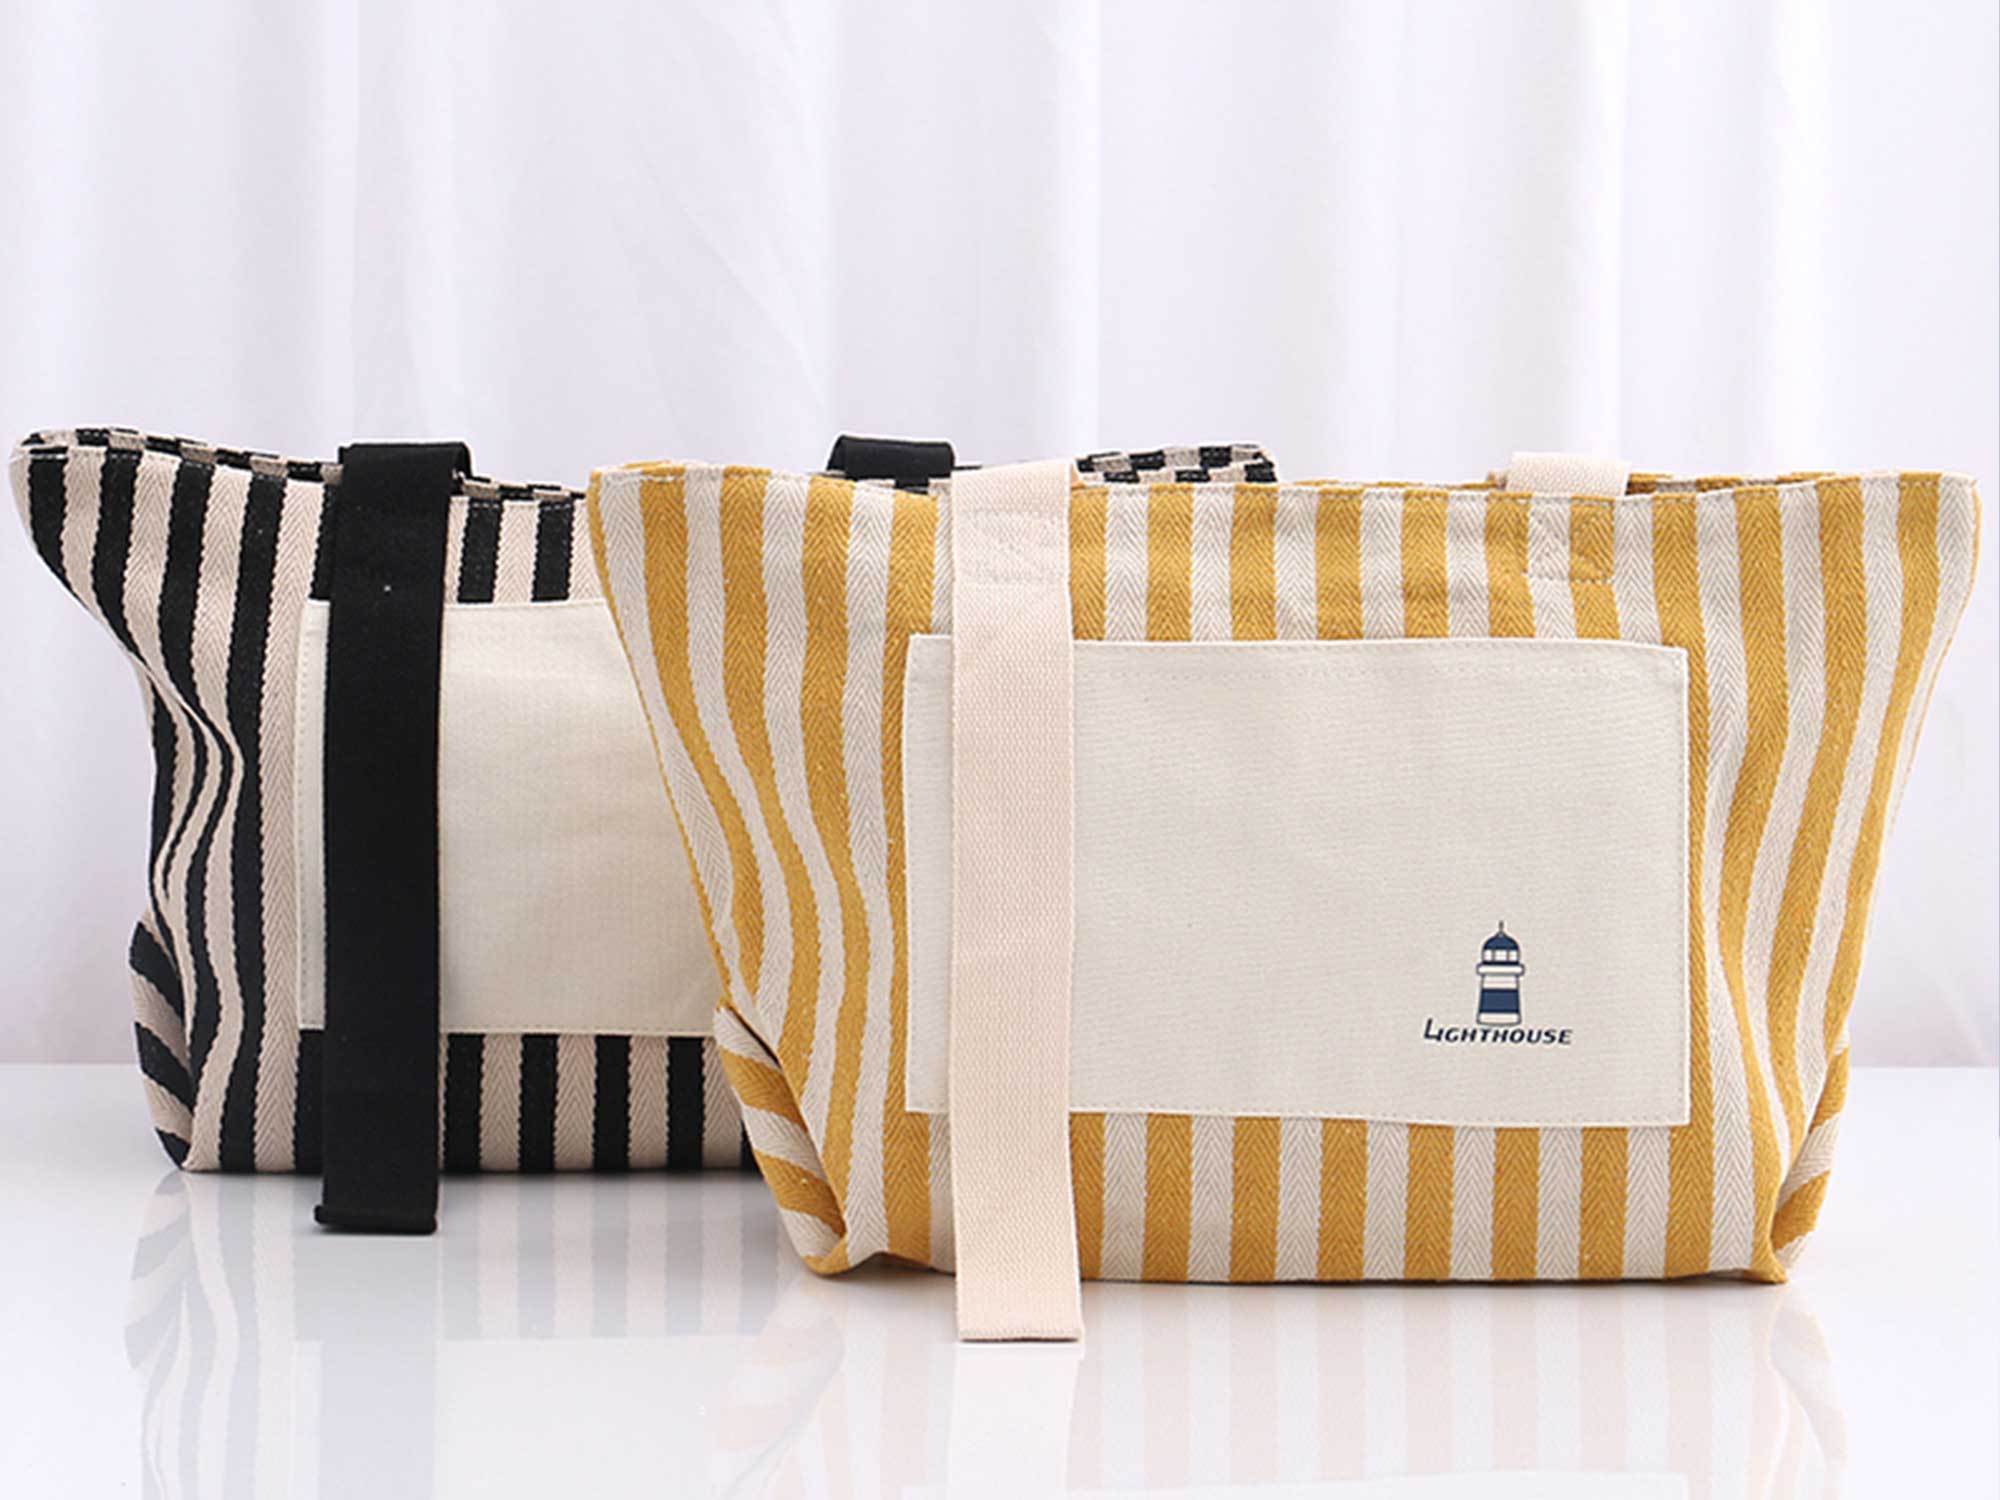 կանացի պայուսակ XIMI Leisure Black and White Stripes Shopping Bag